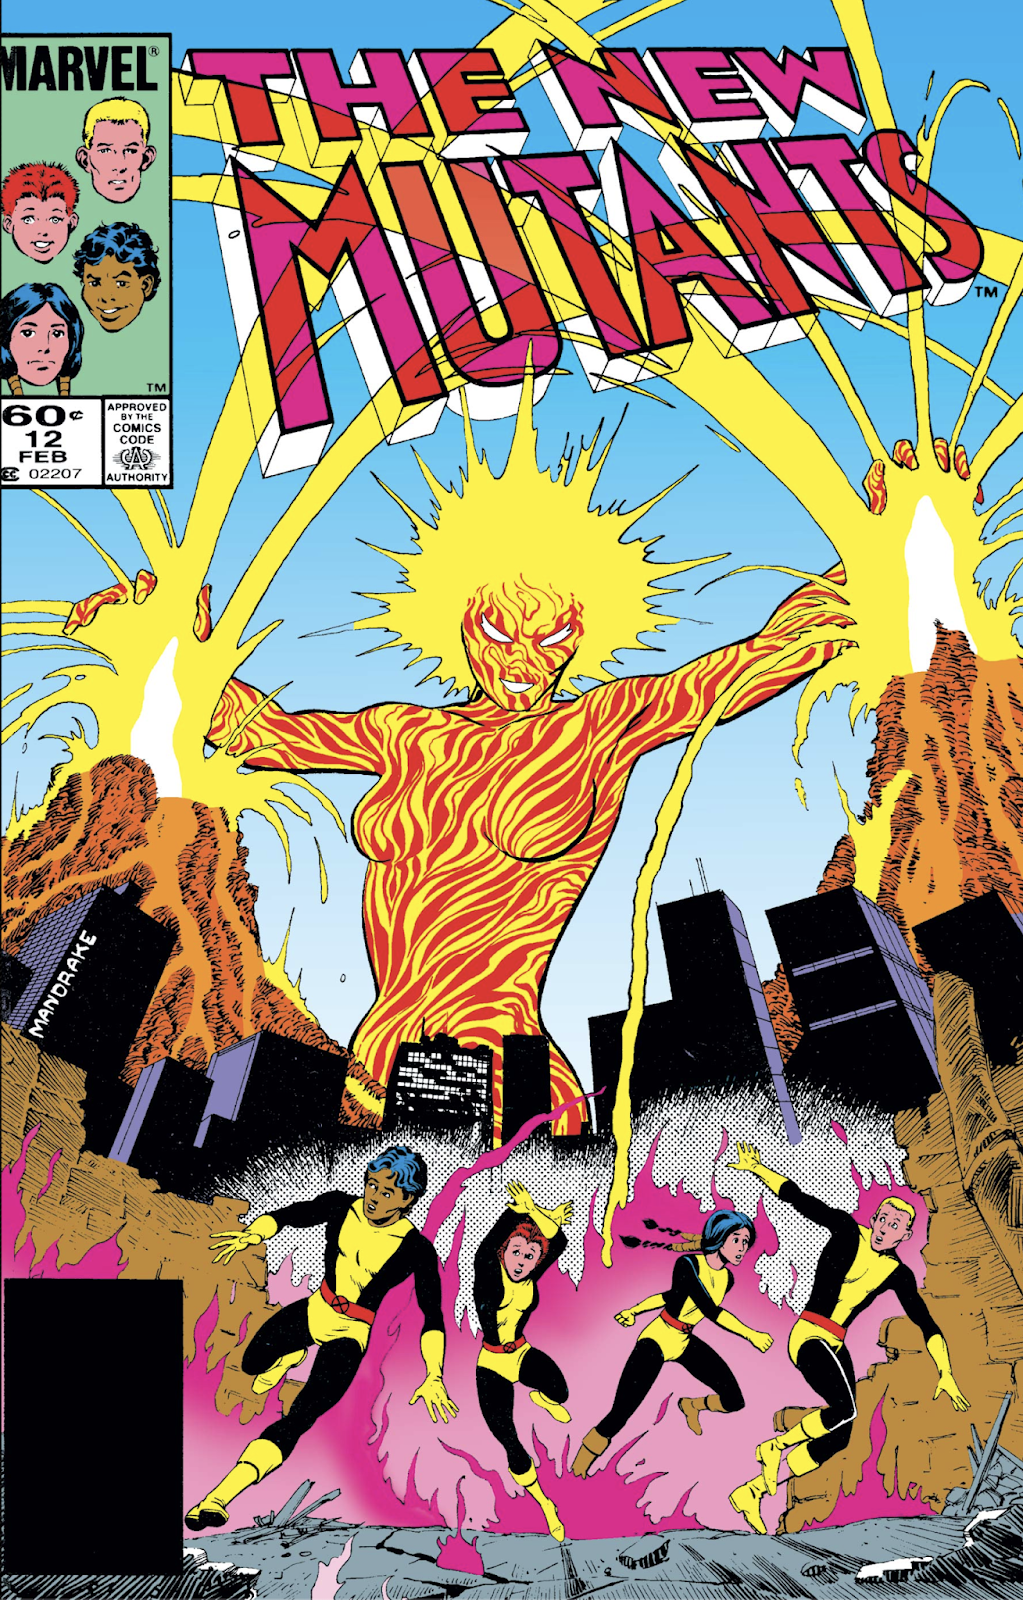 New Mutants (1983) #1, Comic Issues